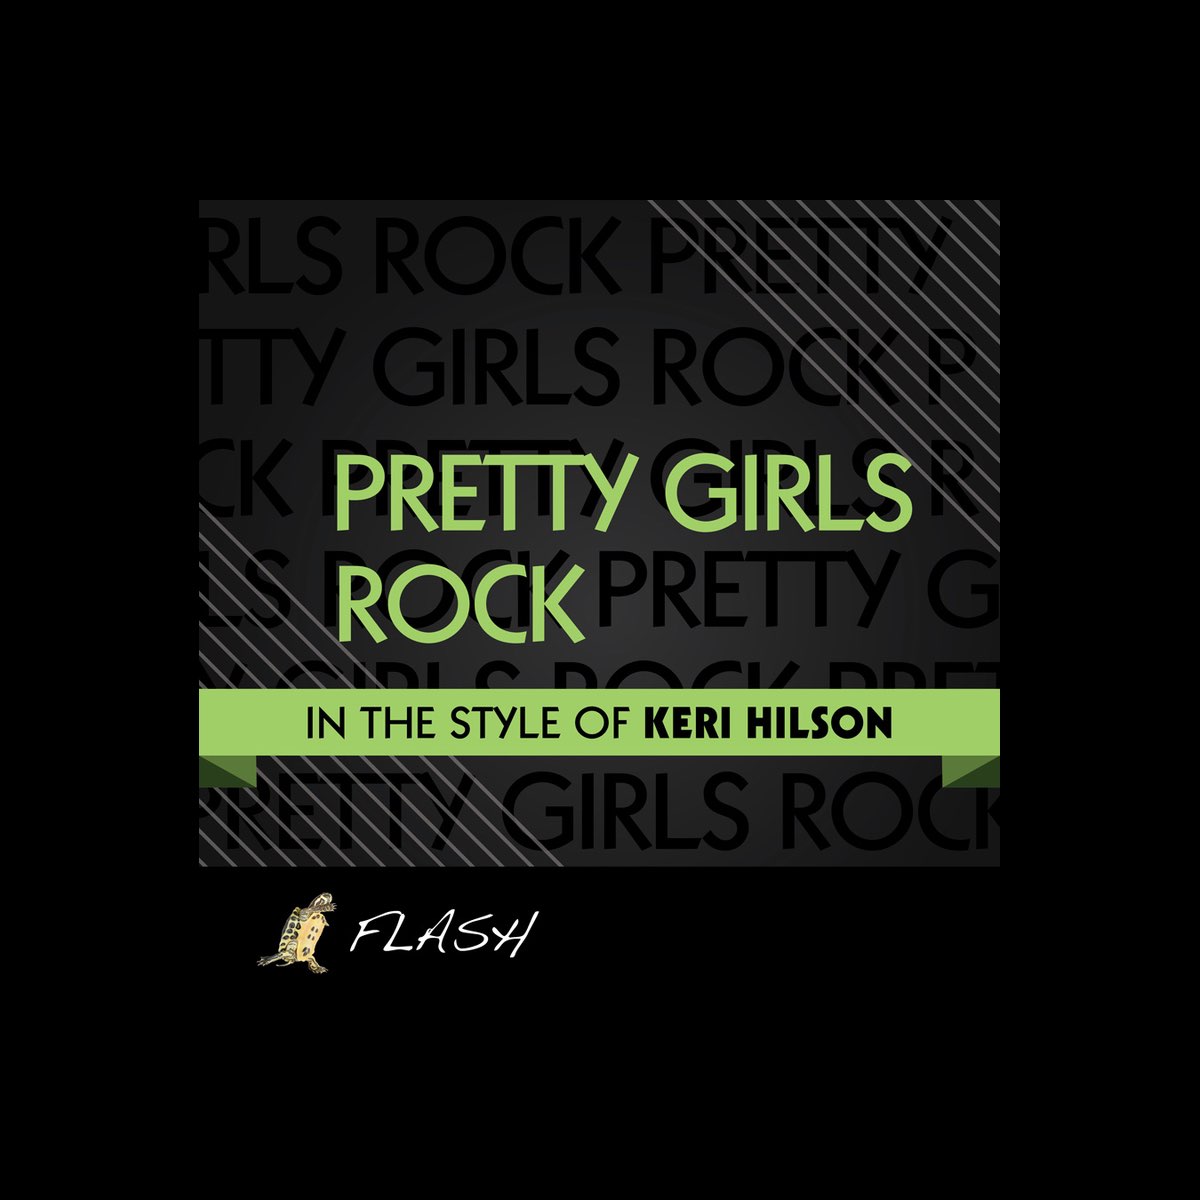 keri hilson pretty girl rock album cover